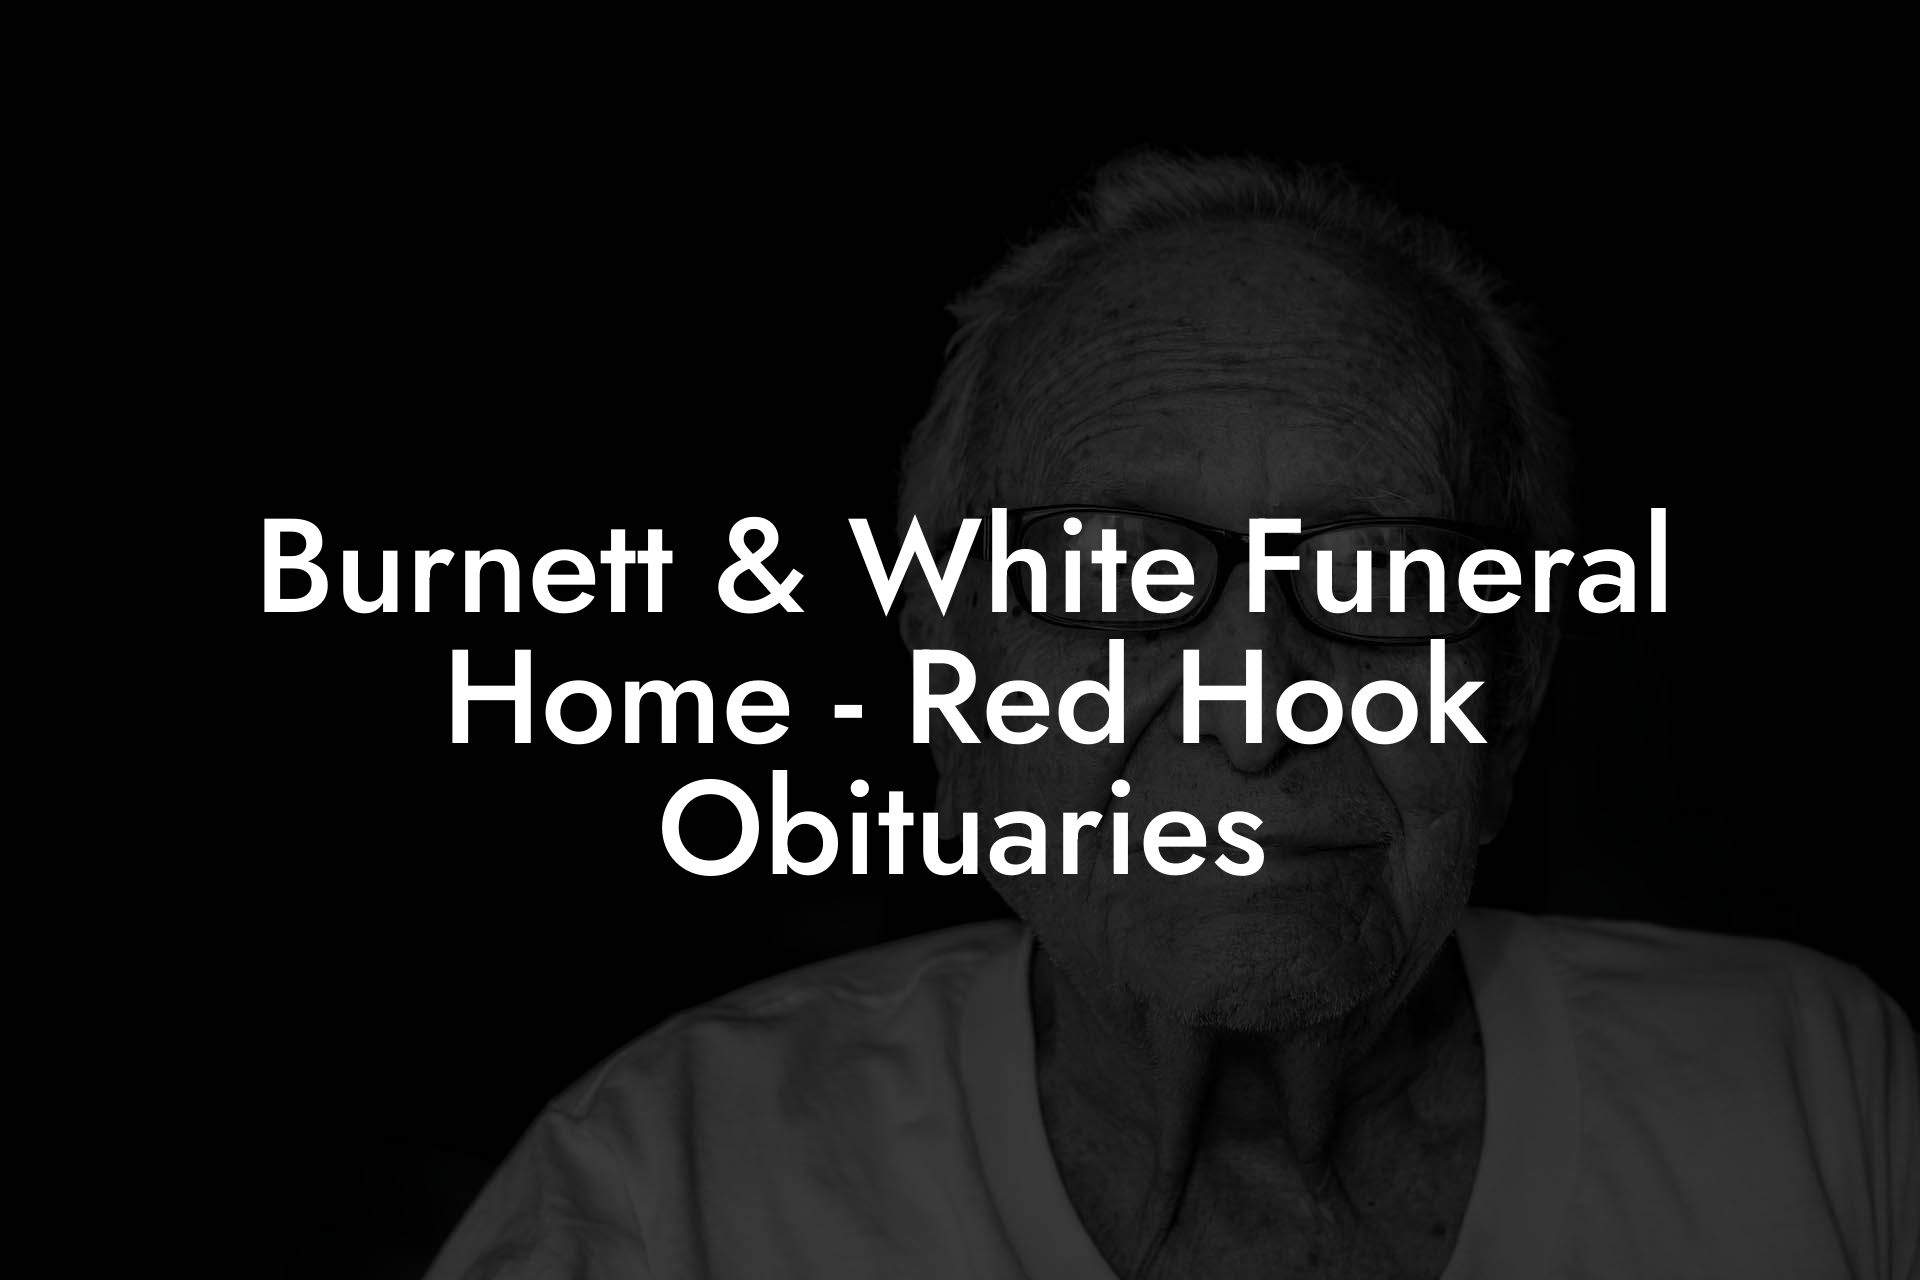 Burnett & White Funeral Home - Red Hook Obituaries